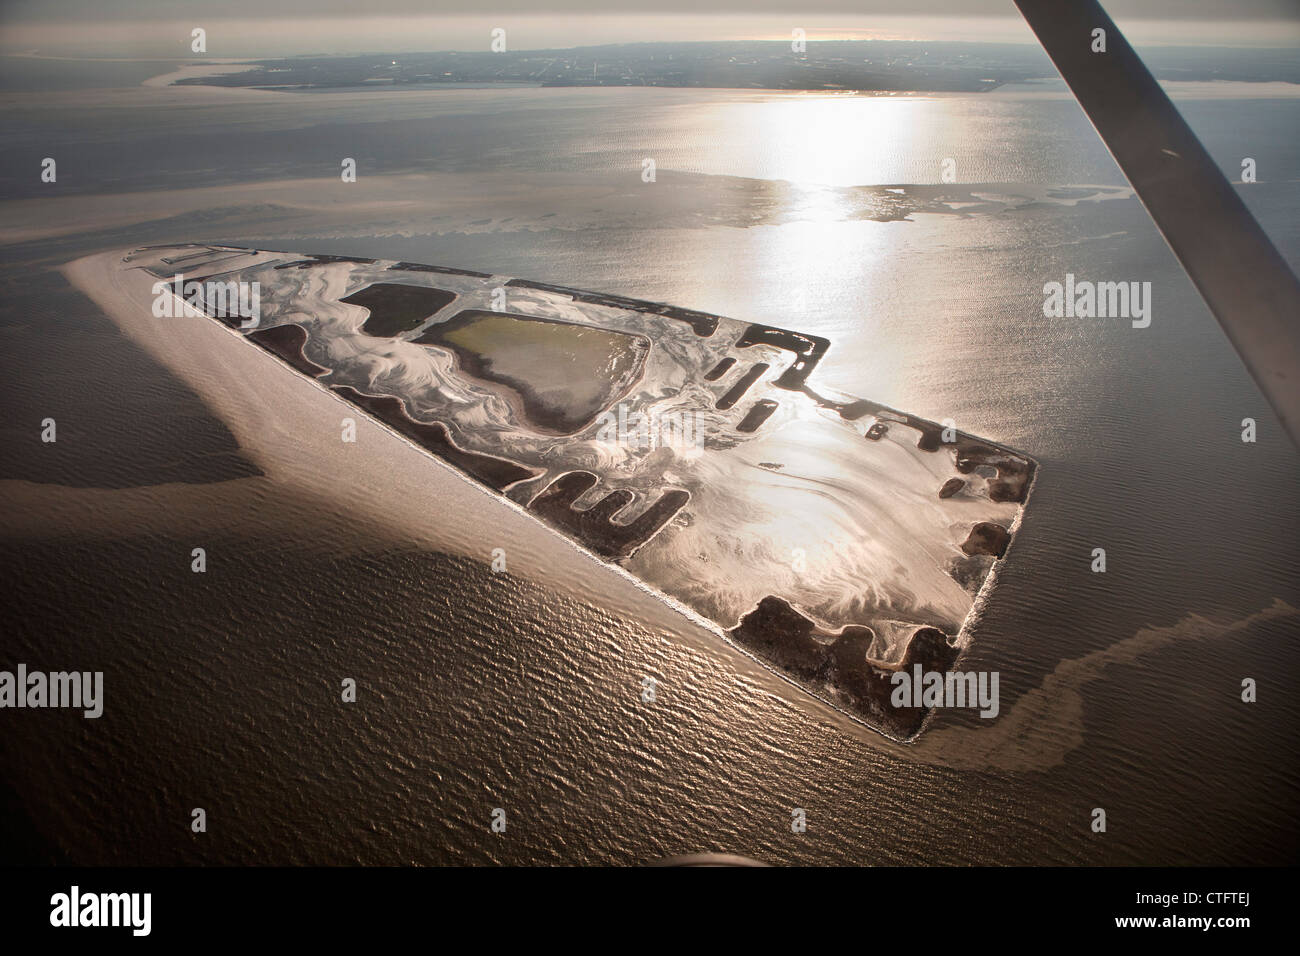 Die Niederlande, Andijk, künstliche Insel namens The Lame, niederländische Forstverwaltung. Luft. Stockfoto